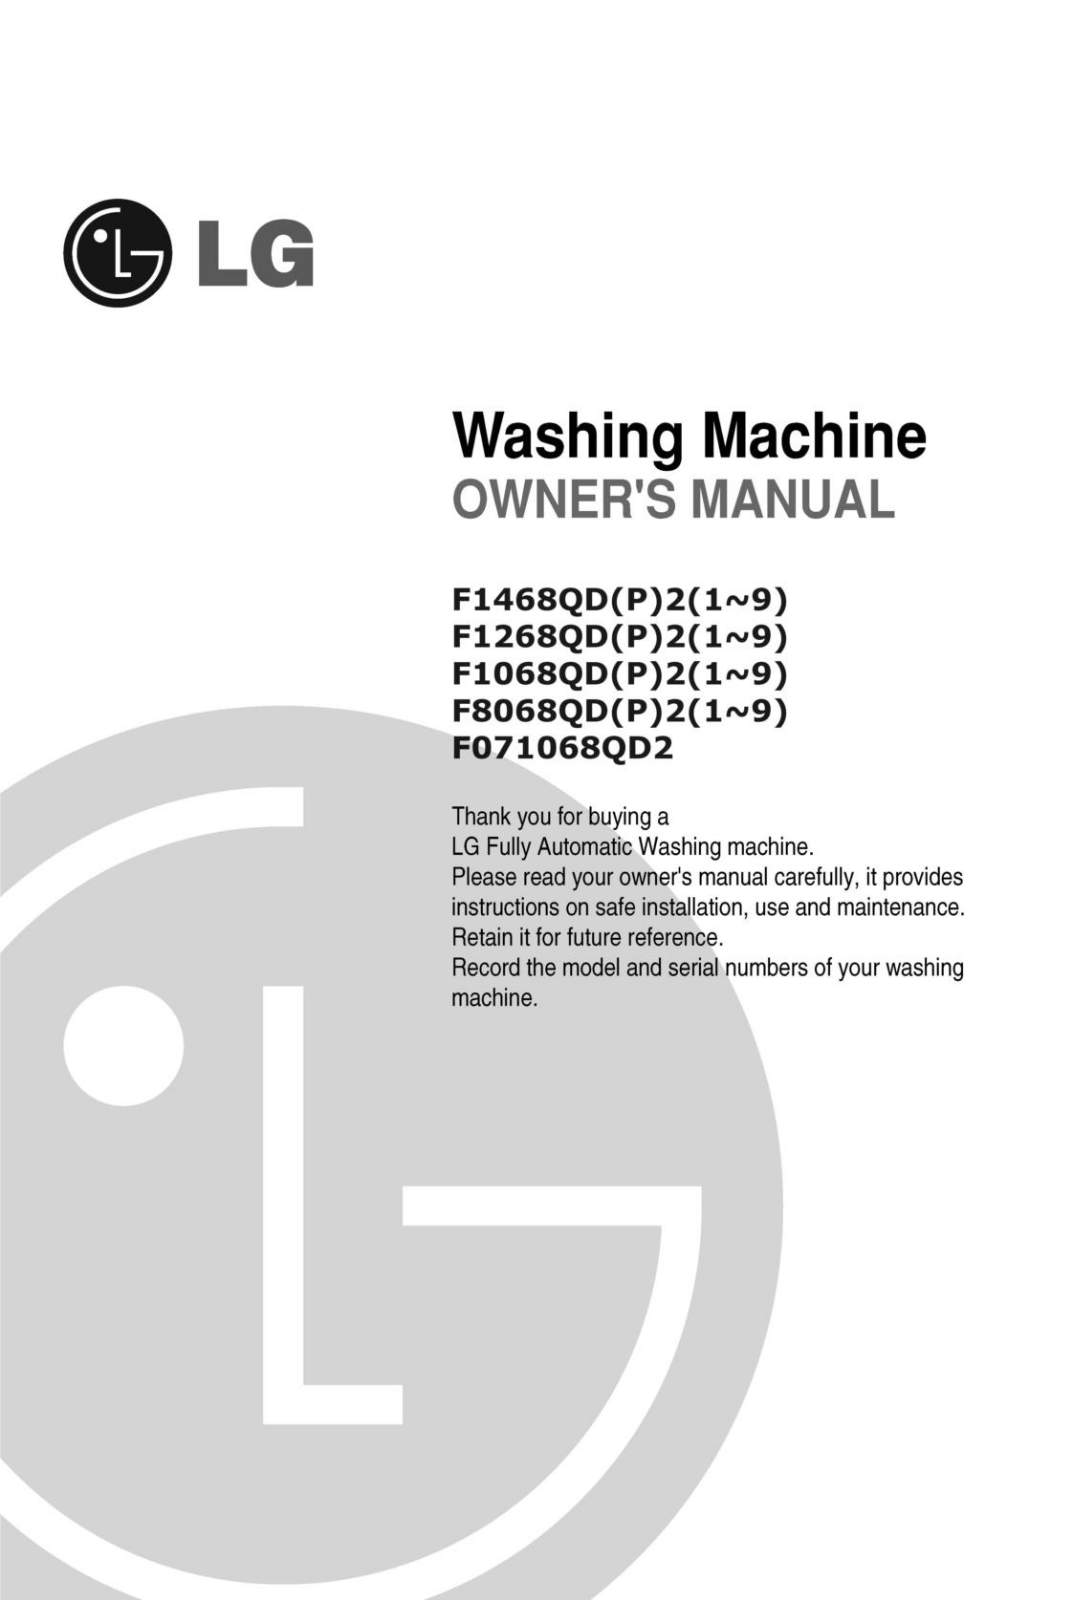 LG F1068QDP2, F8068QDP2 Owner’s Manual